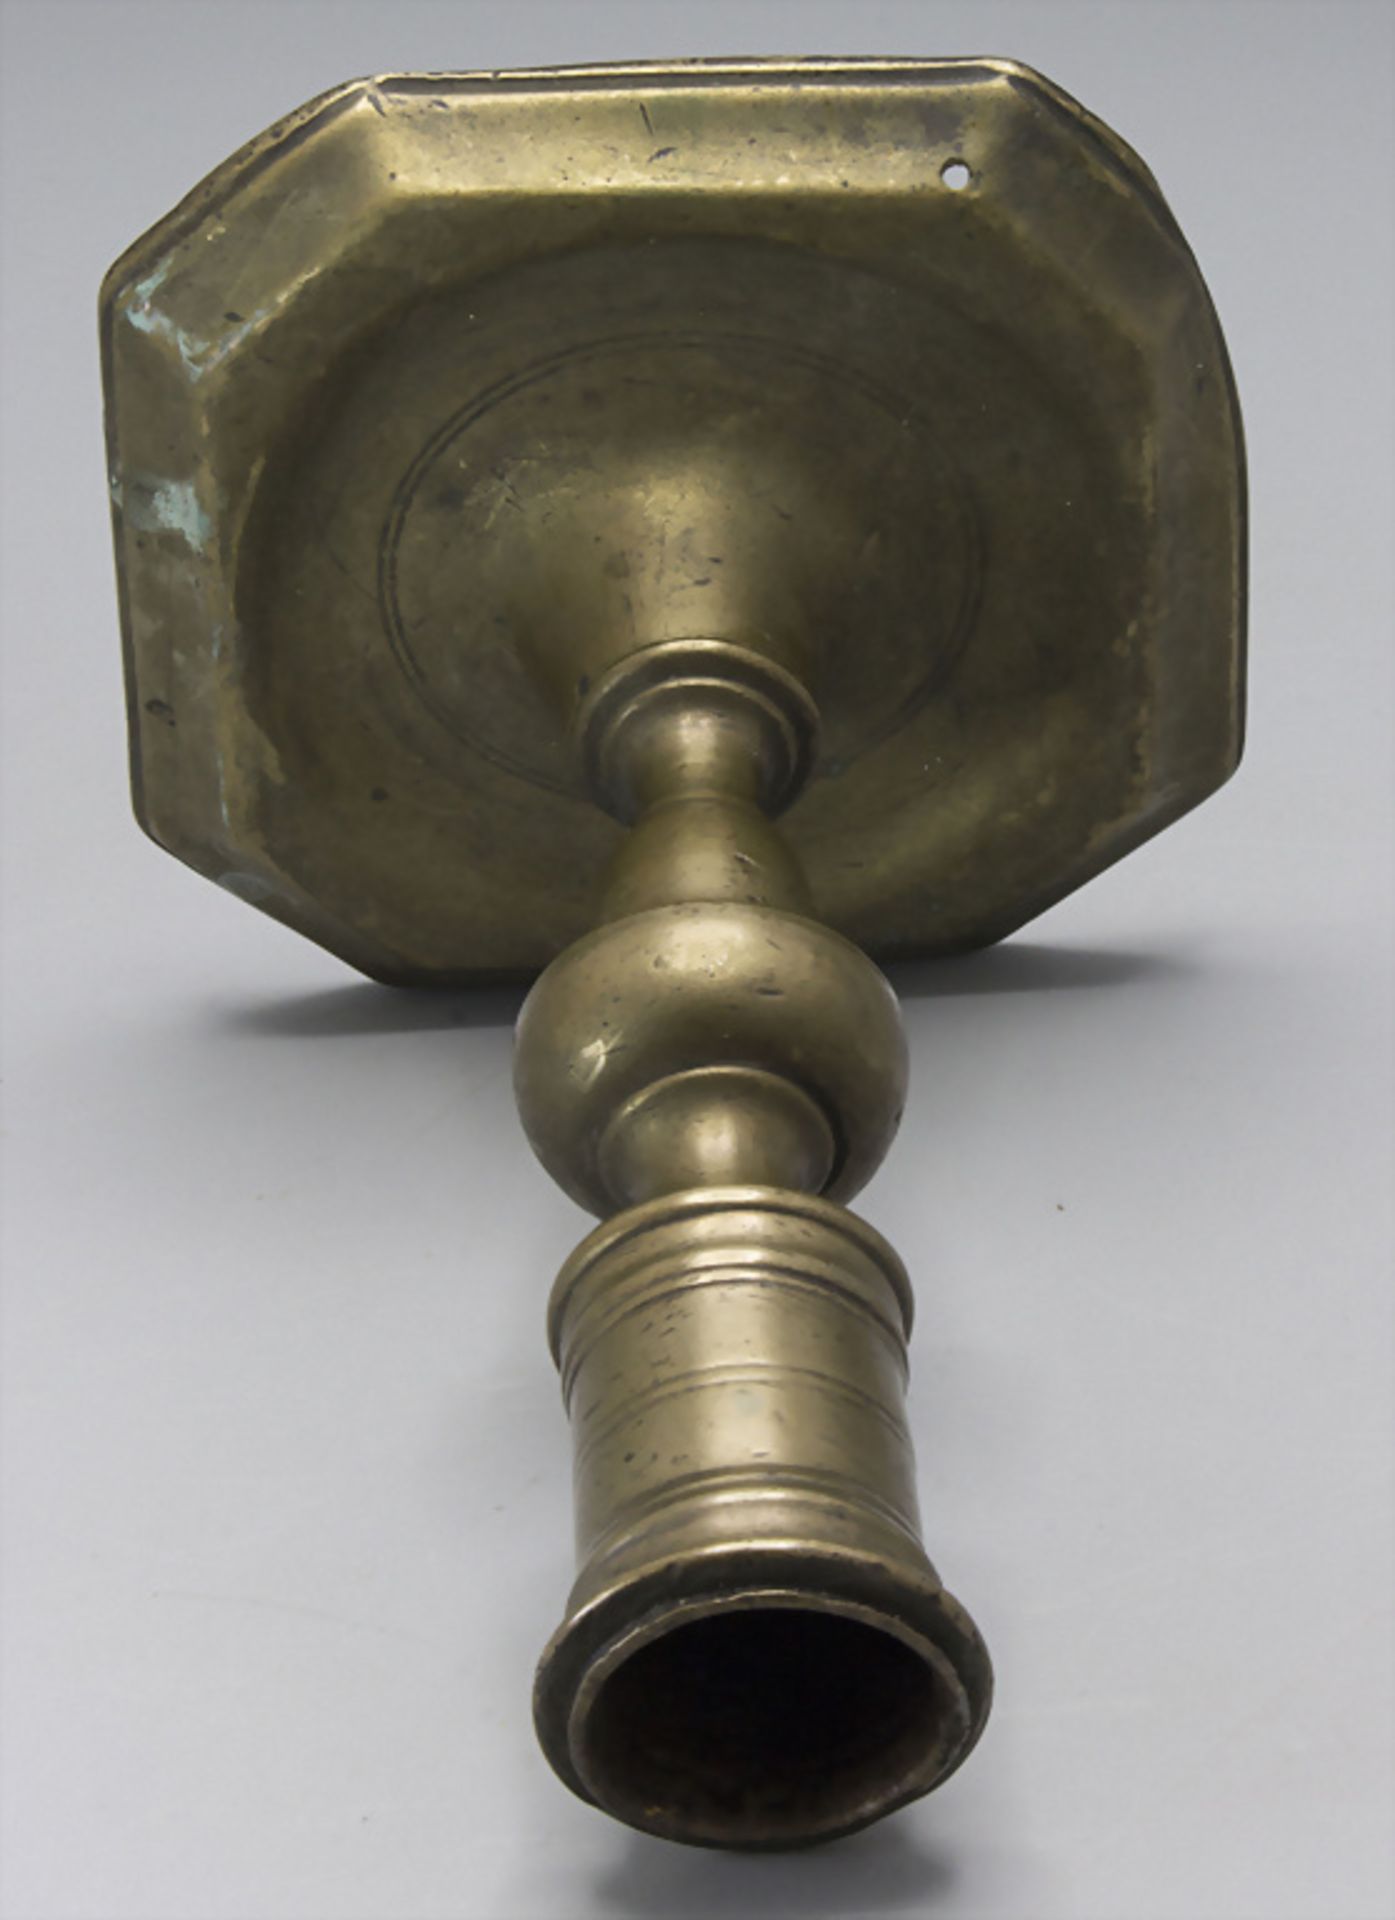 Bronze Kerzenleuchter / A bronze candlestick, wohl 17. Jh. - Image 2 of 3